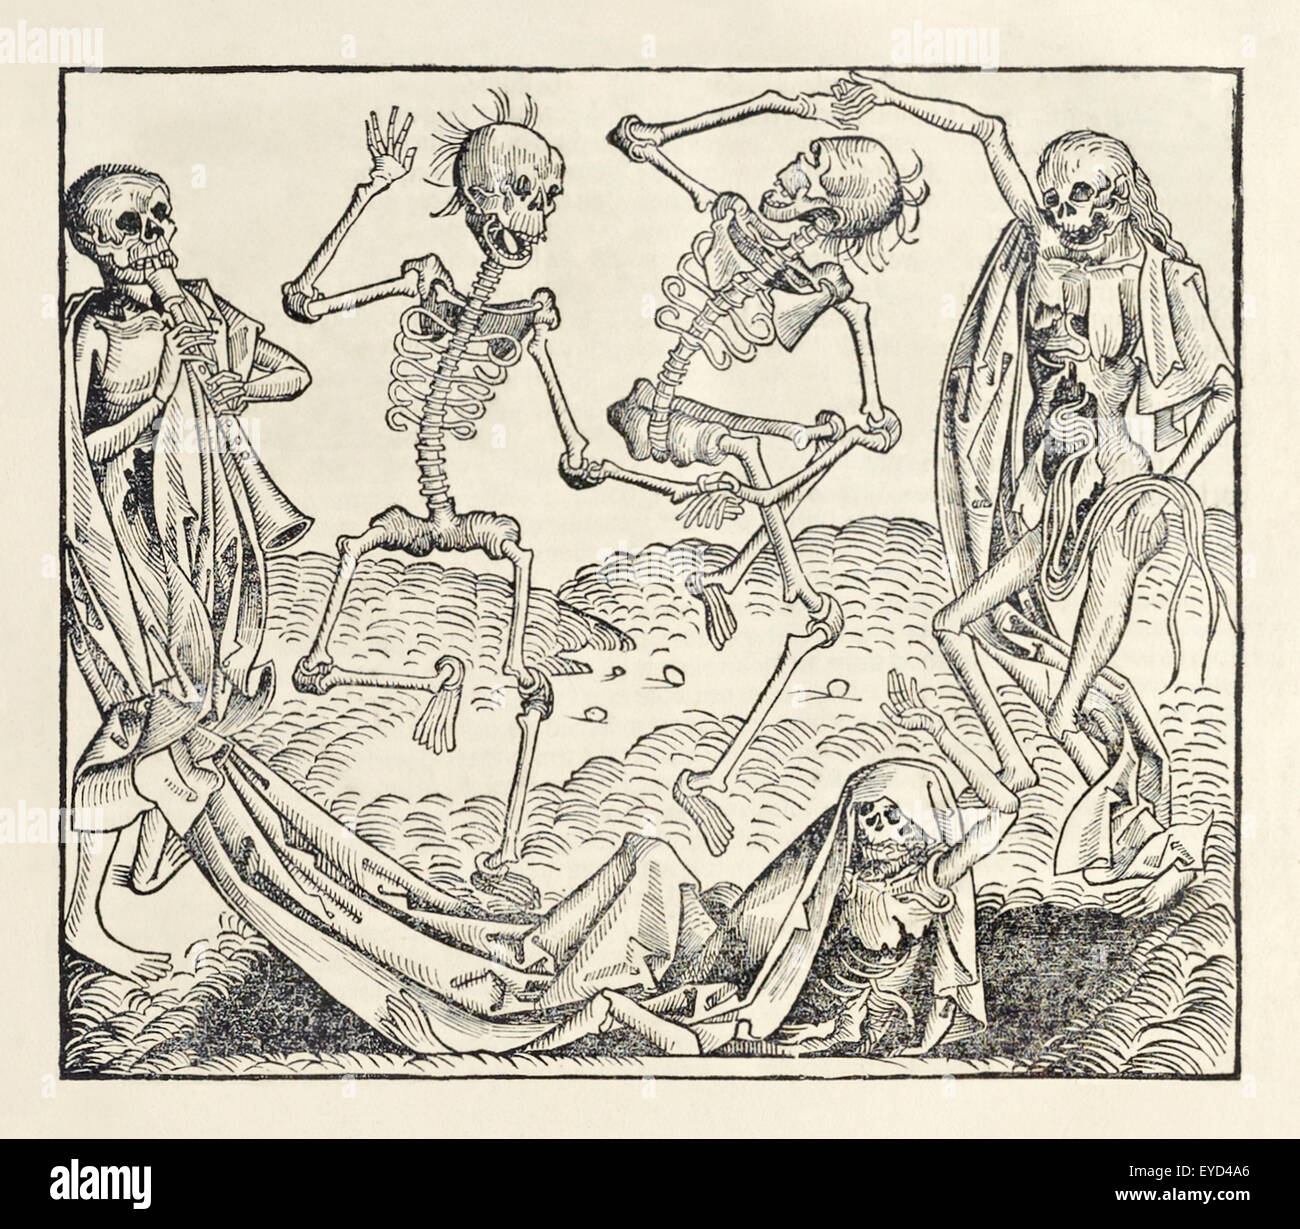 "Dance of Death" (alias "Danse Macabre") da "Liber Chronicarum" di Hartmann Schedel (1440-1514) pubblicato nel 1493, Woodcut di Michael Wolgemut (1434-1519). Fotografia del 1493 prima edizione in latino pubblicata a Norimberga, Germania. Credito: Private Collection/AF fotografie Foto Stock